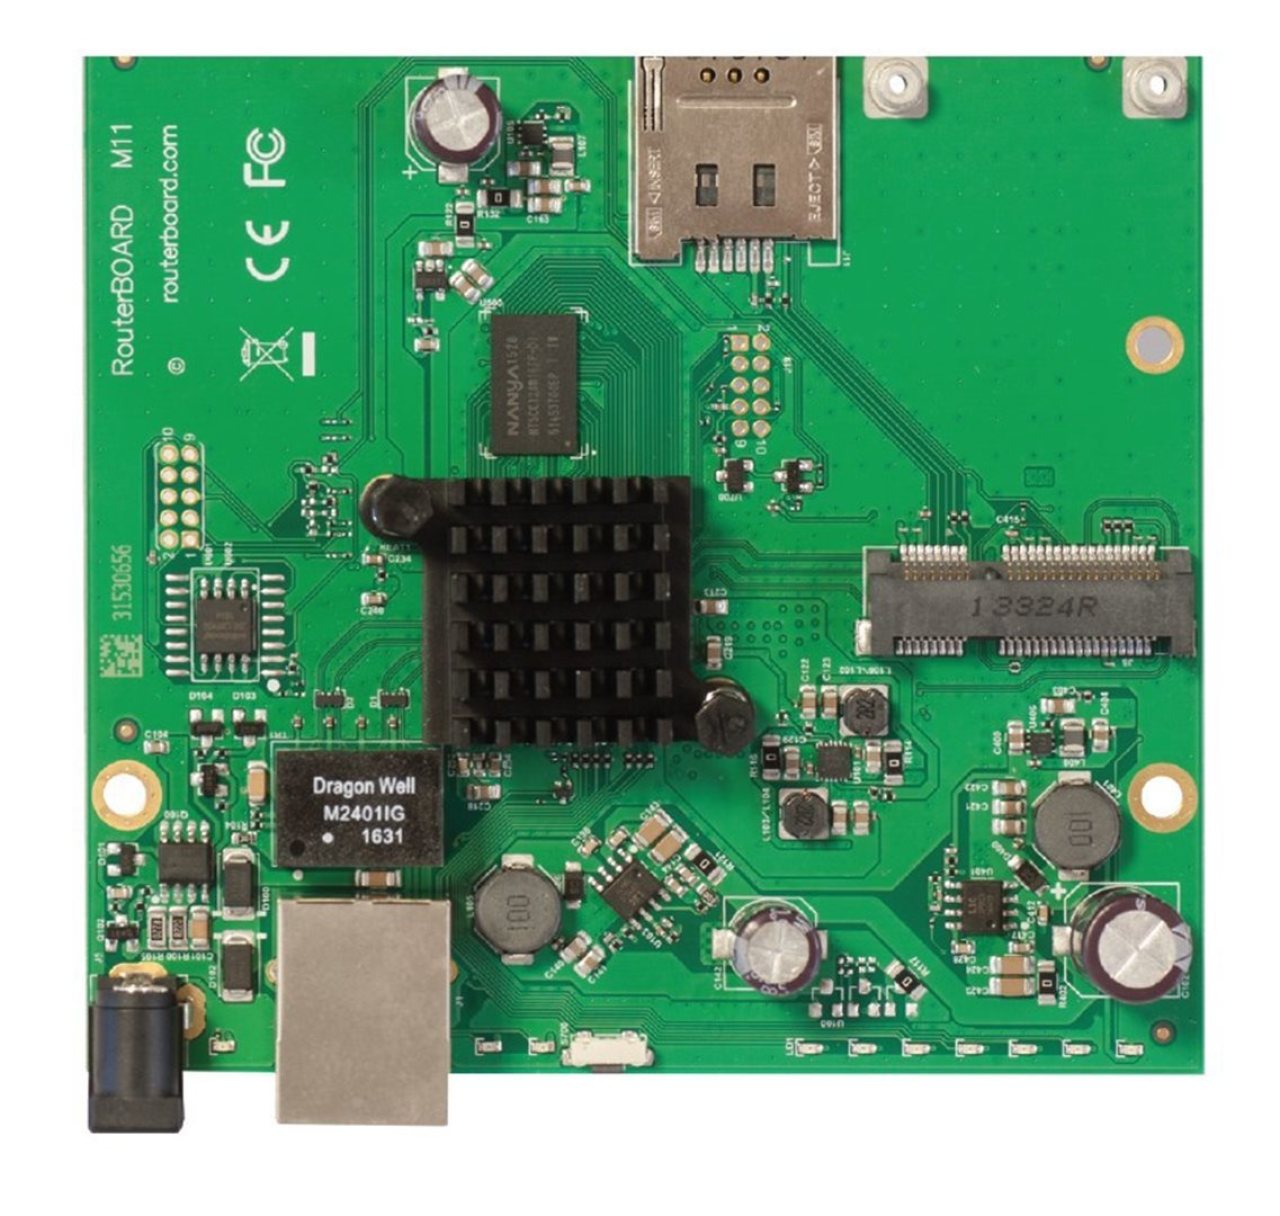 MikroTik RouterBOARD RBM11G 256MB RAM, 2x 880 MHz, 1x miniPCI-e, 1x SIM slot, 1x LAN, L4